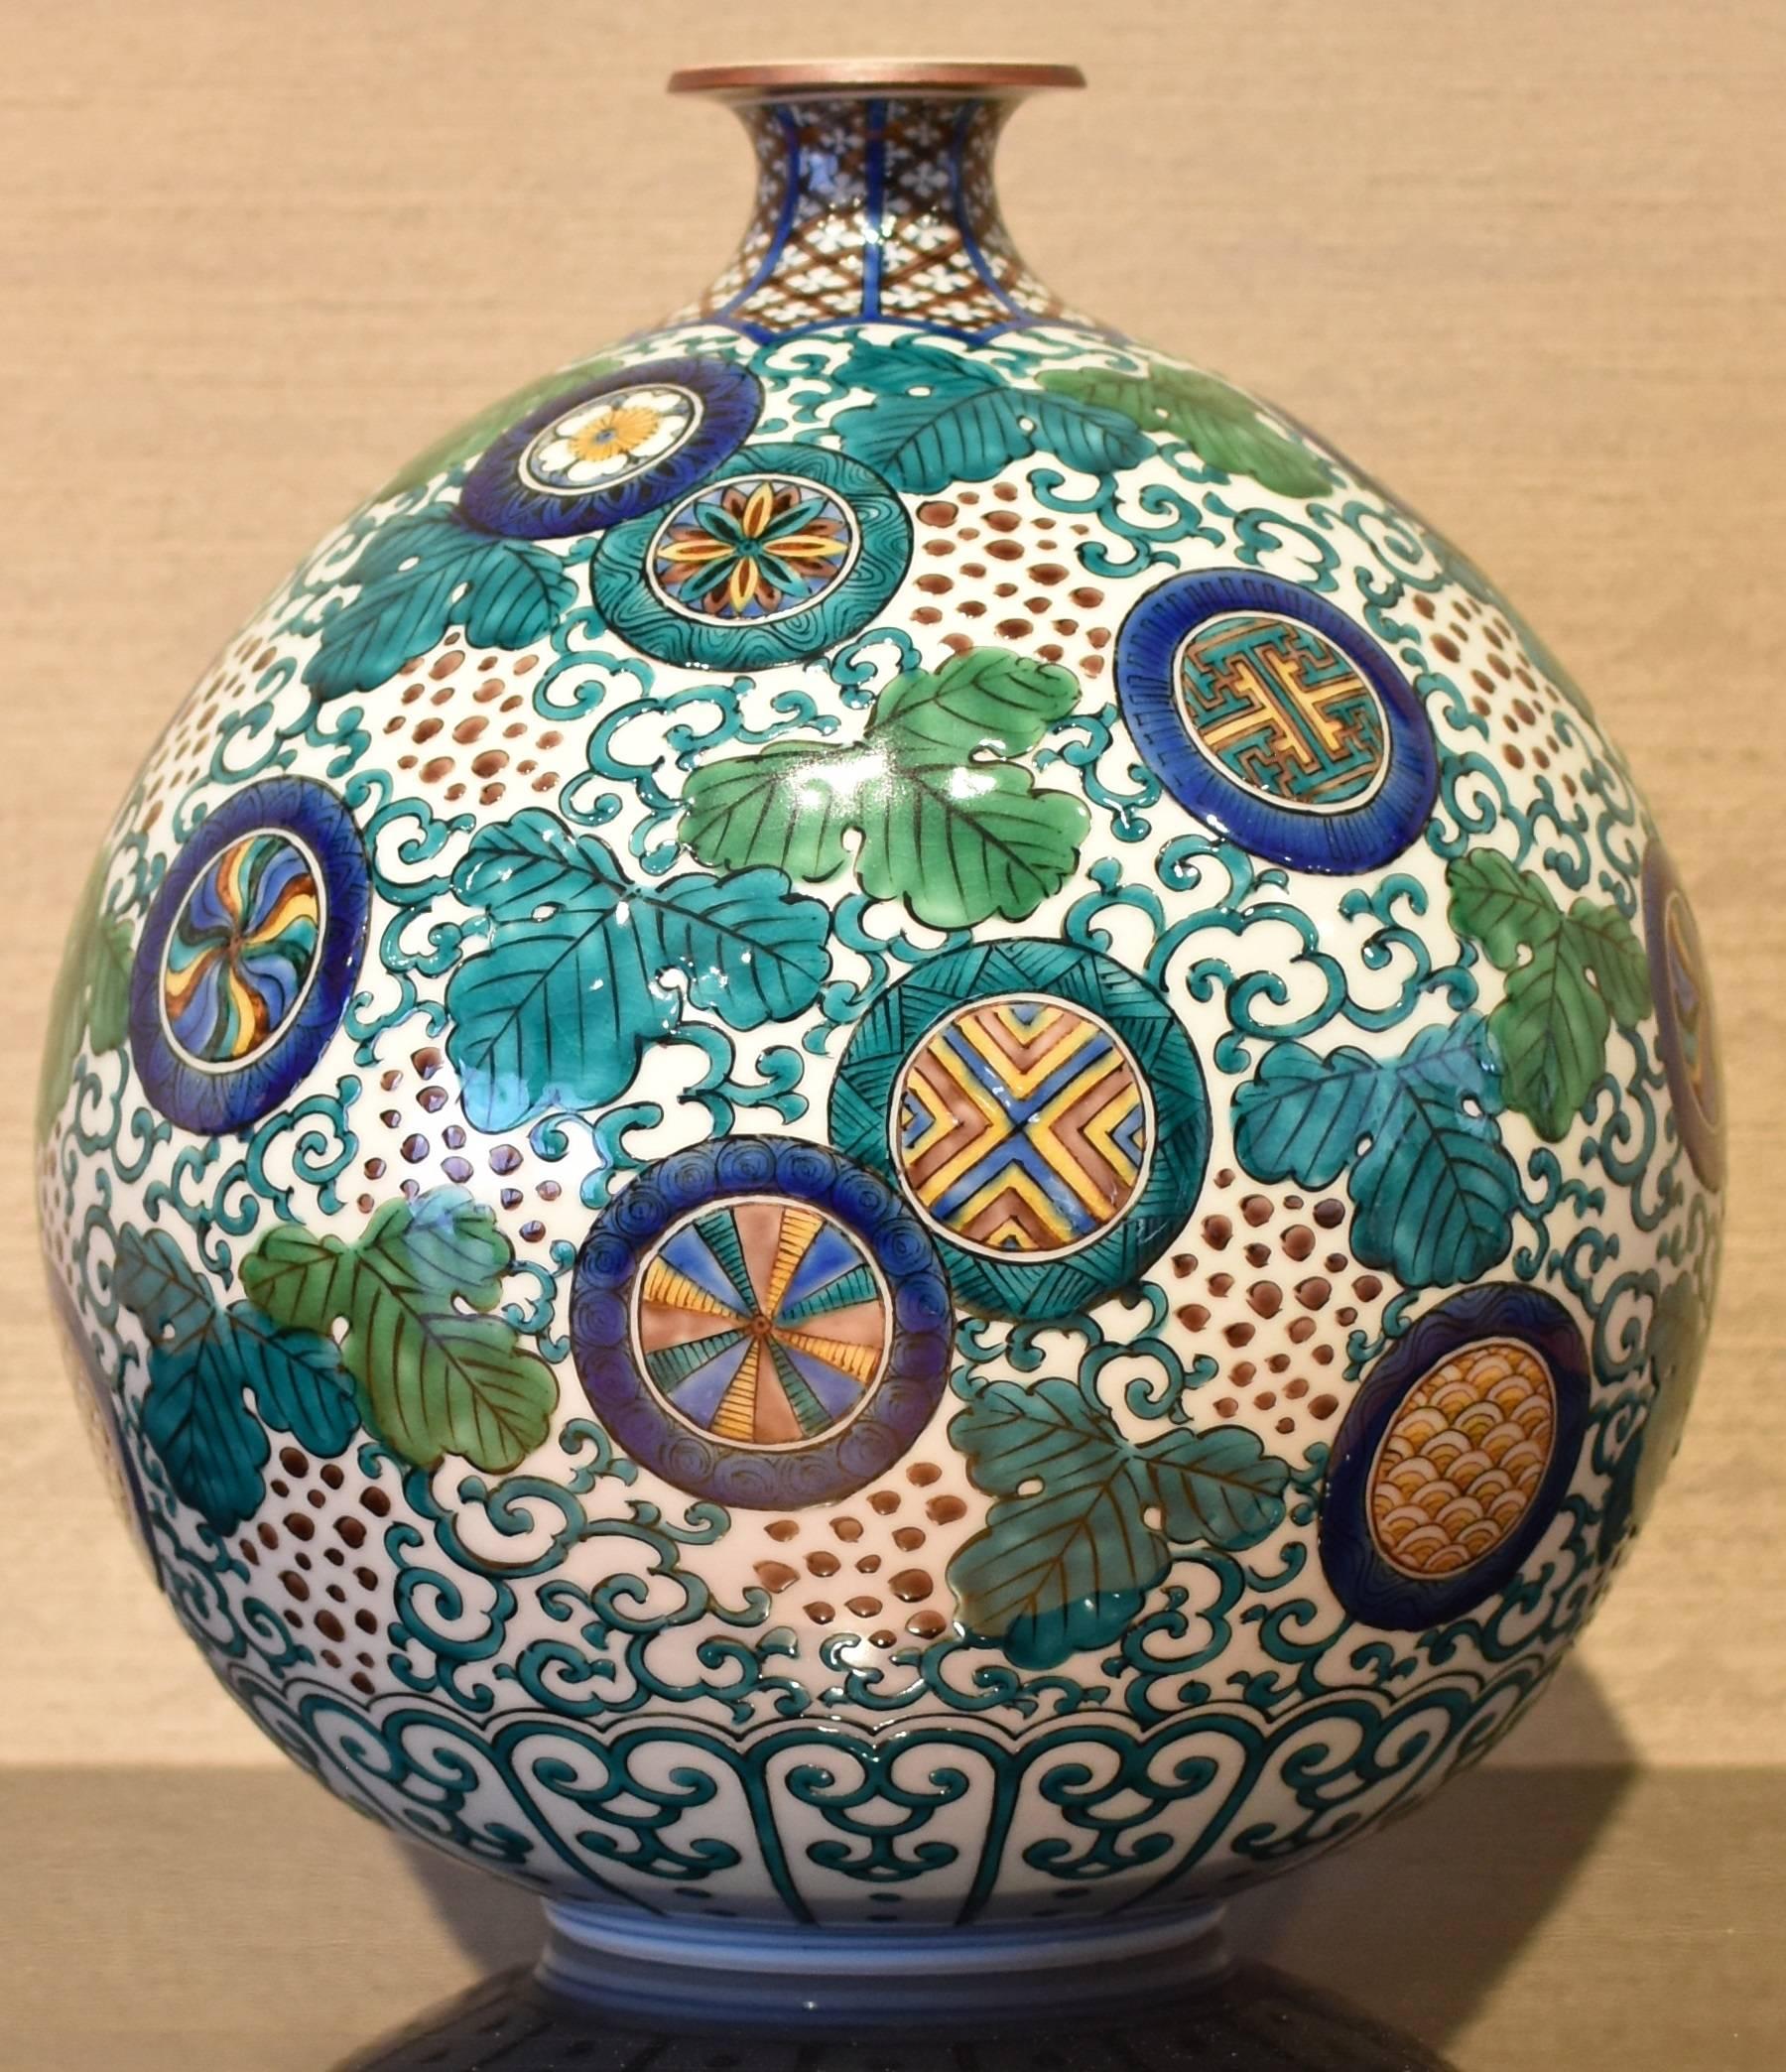 Decorative Kutani Porcelain Vase by Japanese Master Artist 4